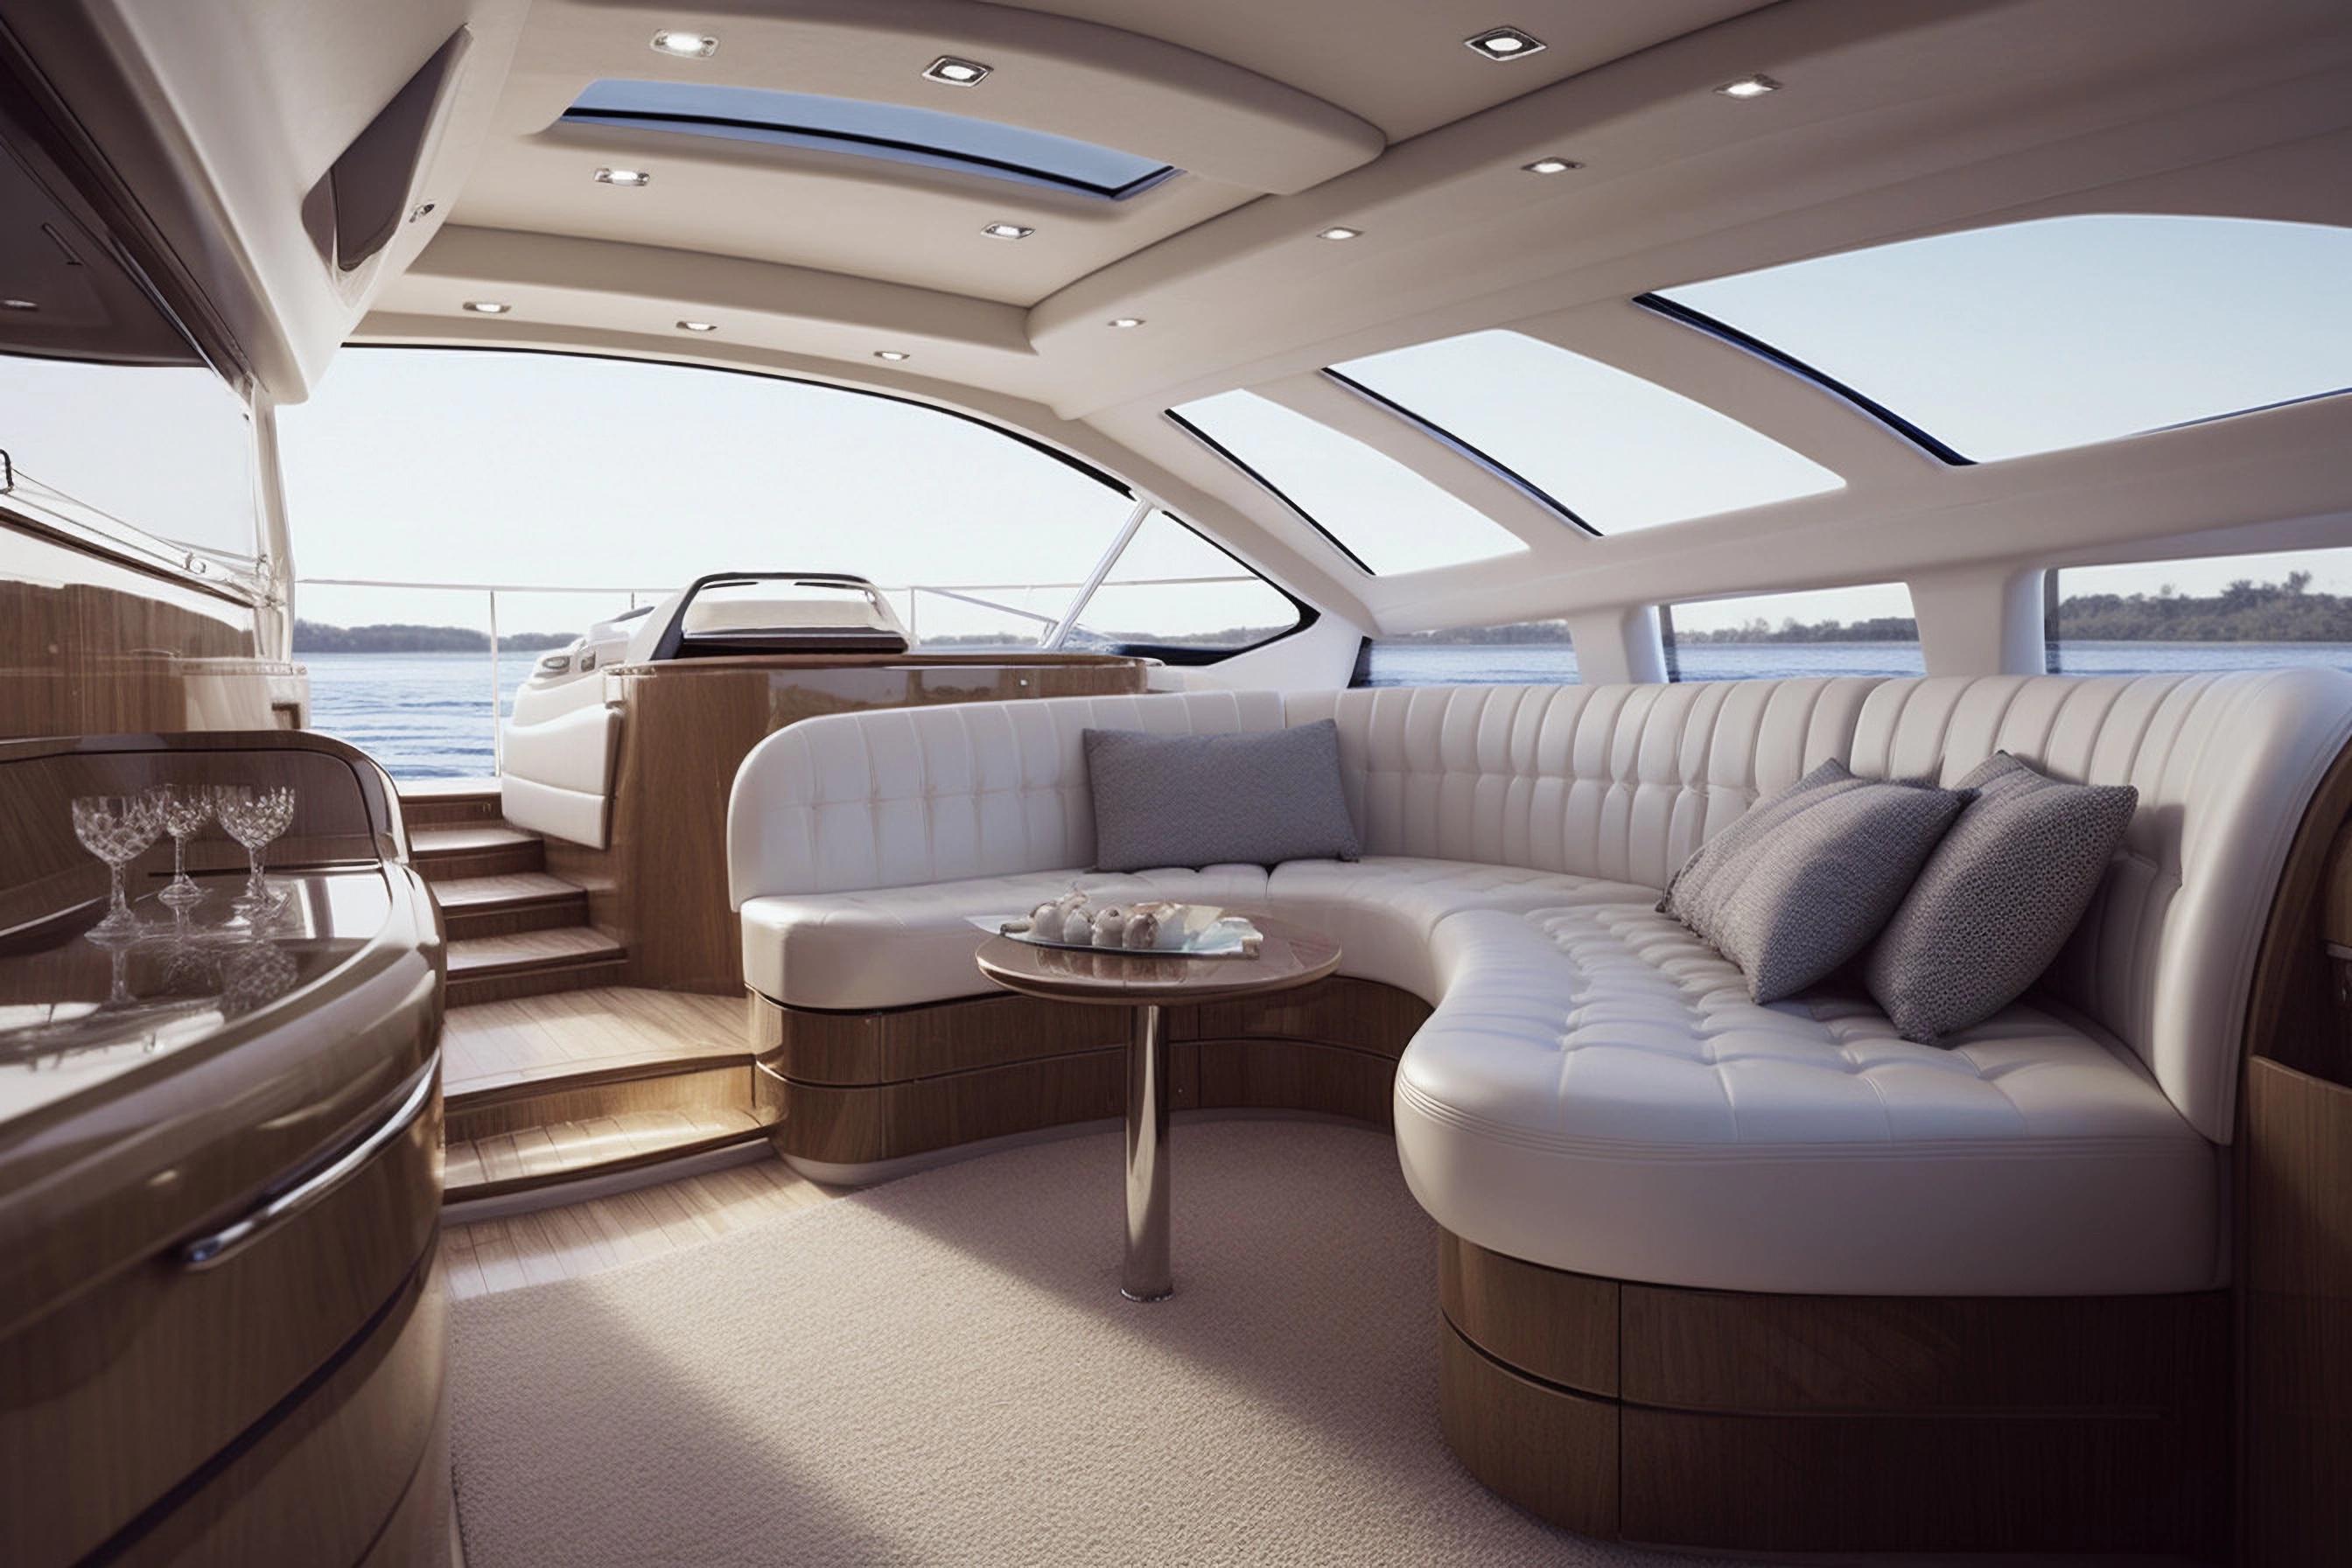 A yacht interior